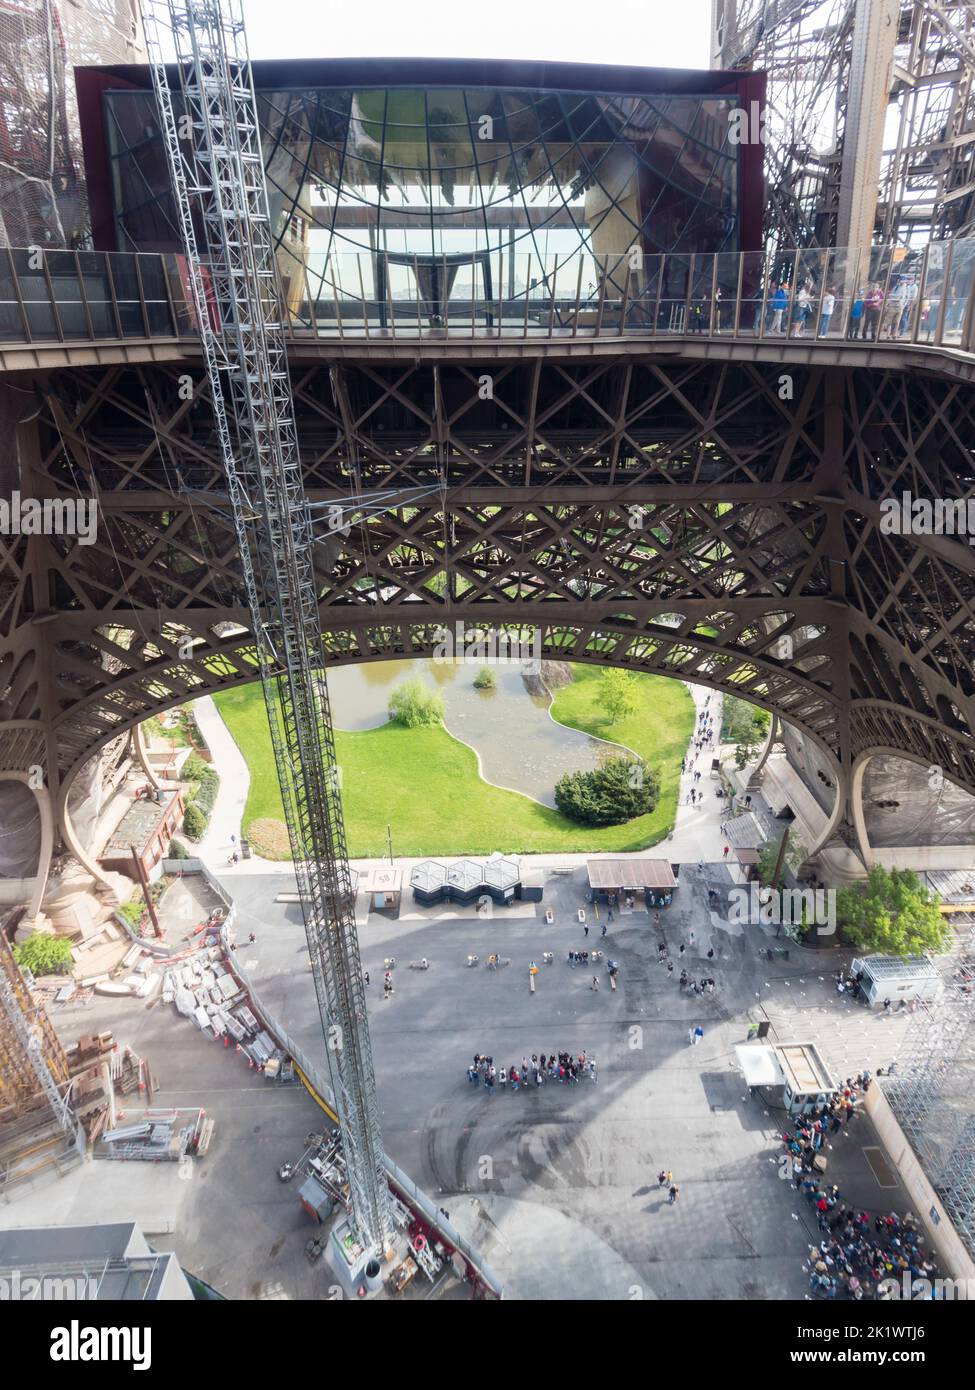 Le persone fanno la fila sotto la Torre Eiffel di Parigi per salire alla piattaforma di osservazione Foto Stock